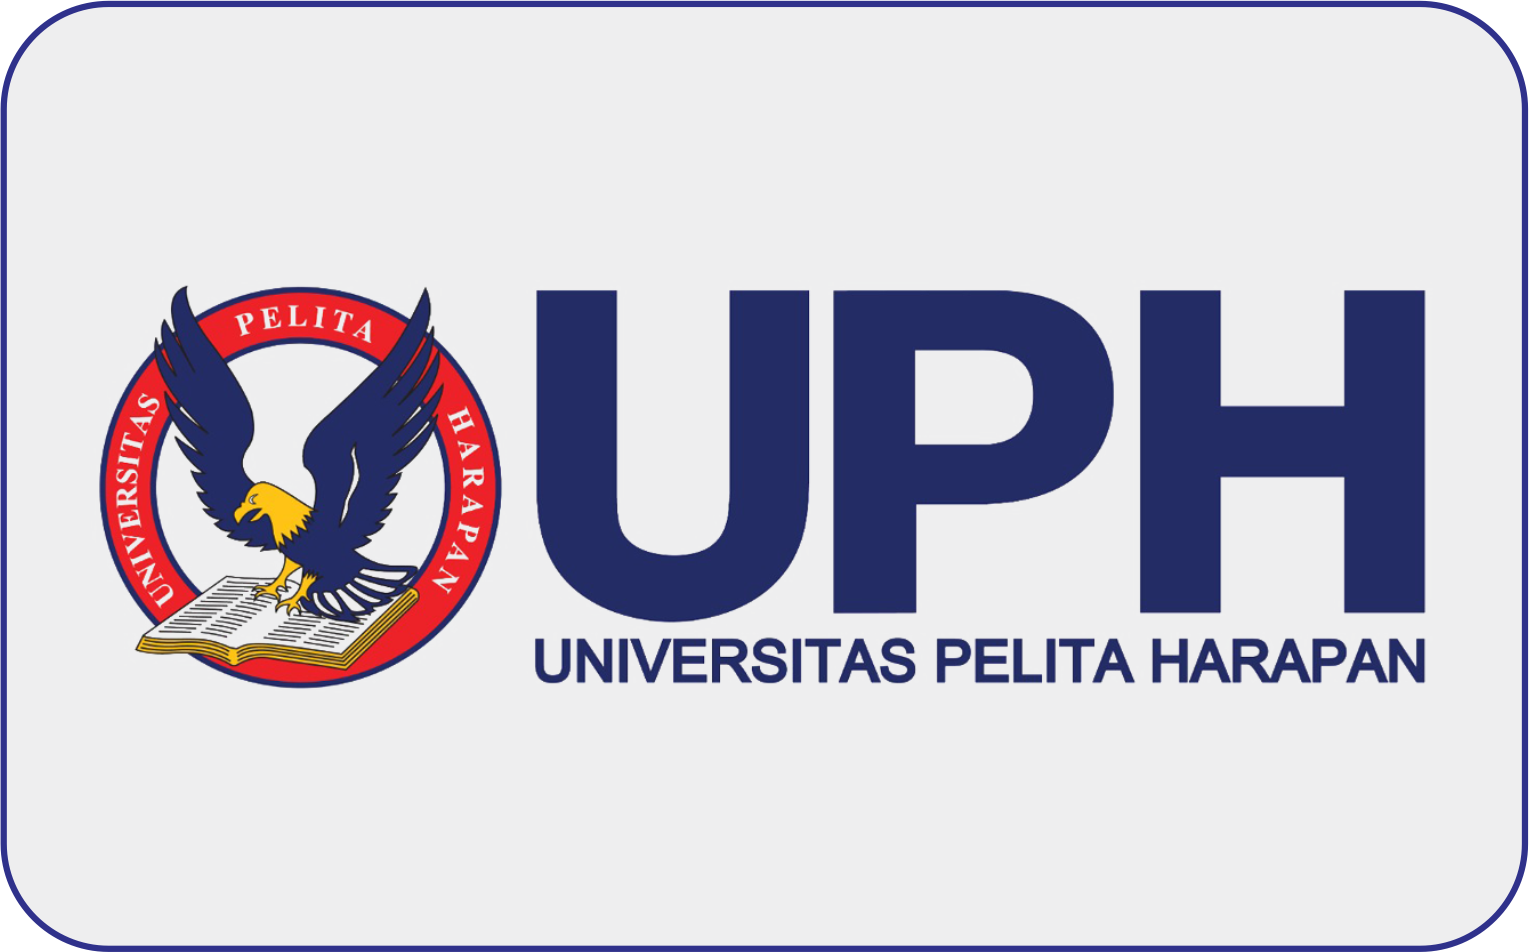 Universitas Pelita Harapan (UPH) Surabaya